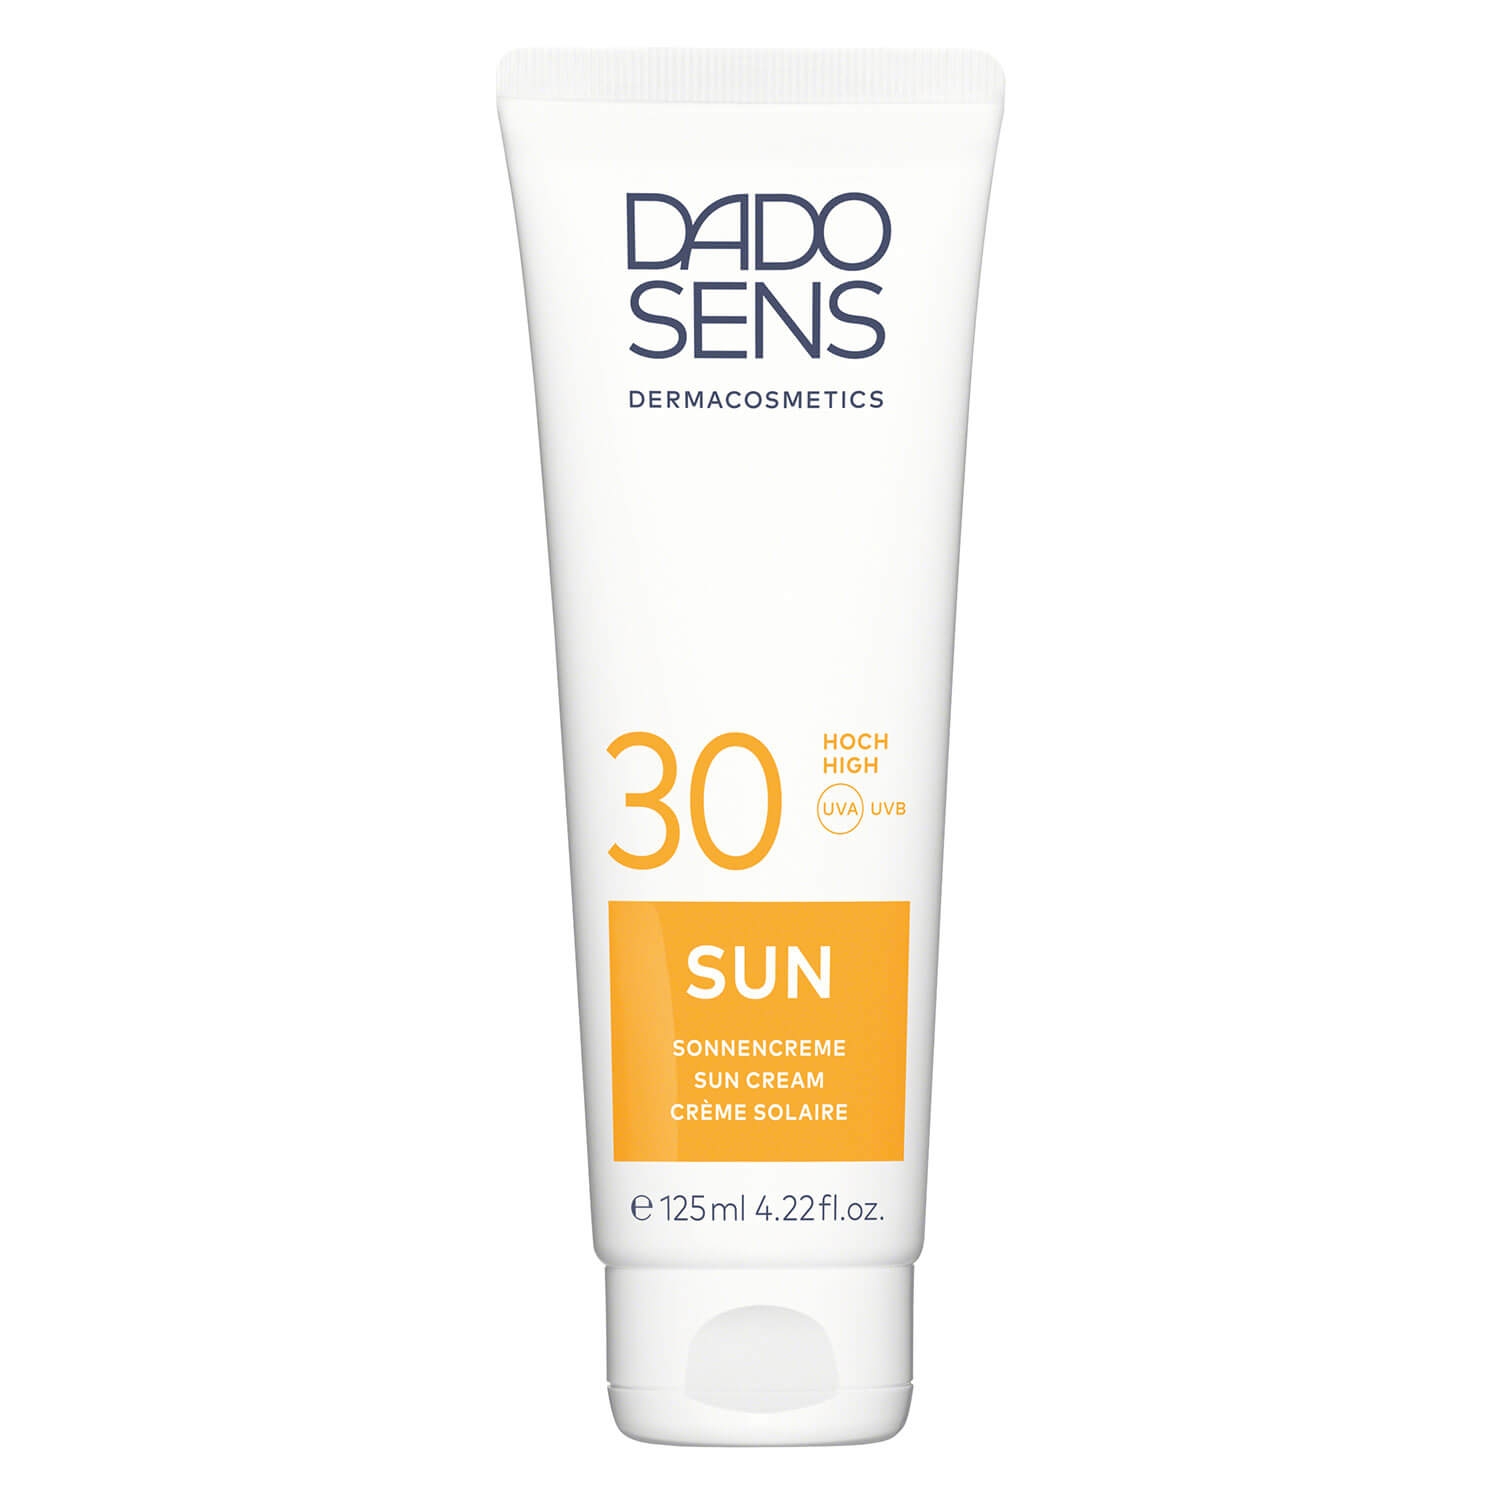 Produktbild von DADO SENS SUN - Sonnen-Creme SPF 30